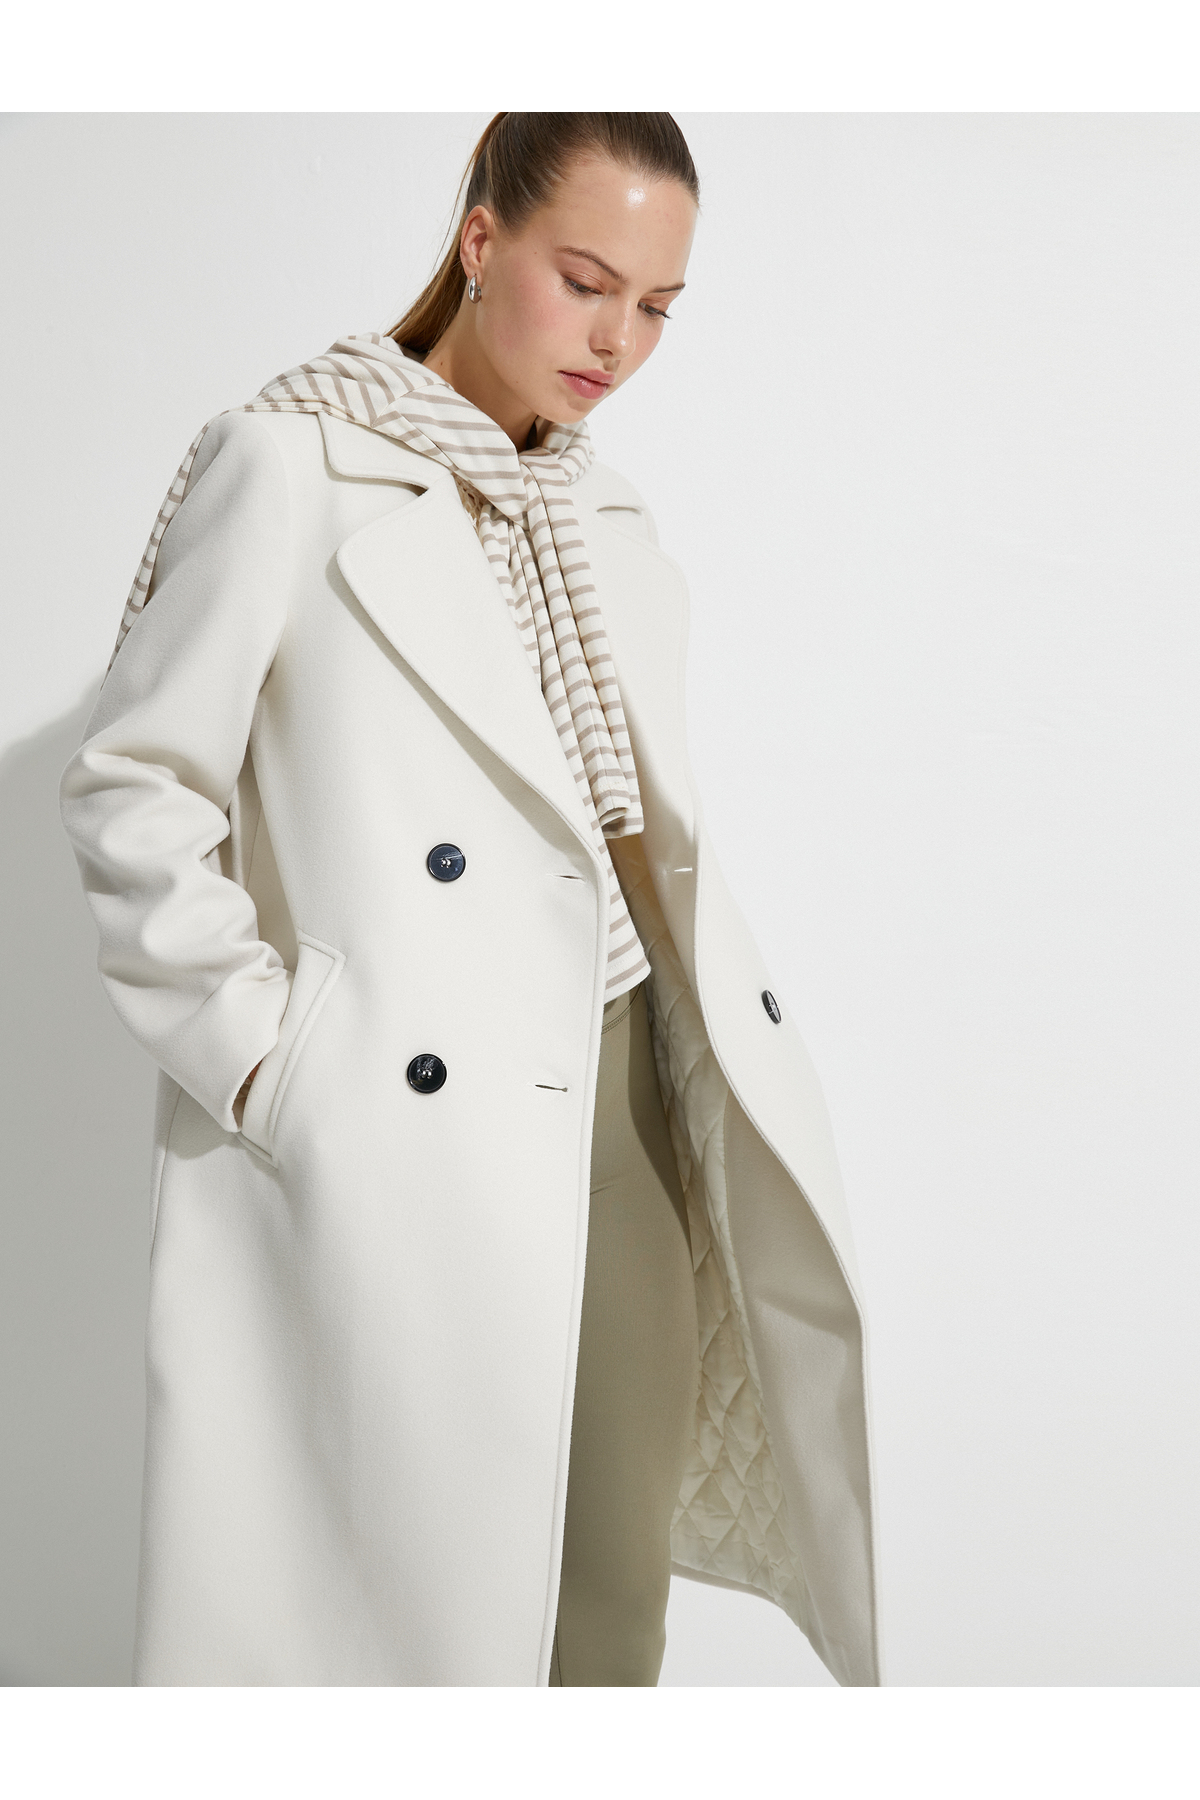 Koton dlhý oversize razený kabát, dvojradový, na gombíky s vreckom.